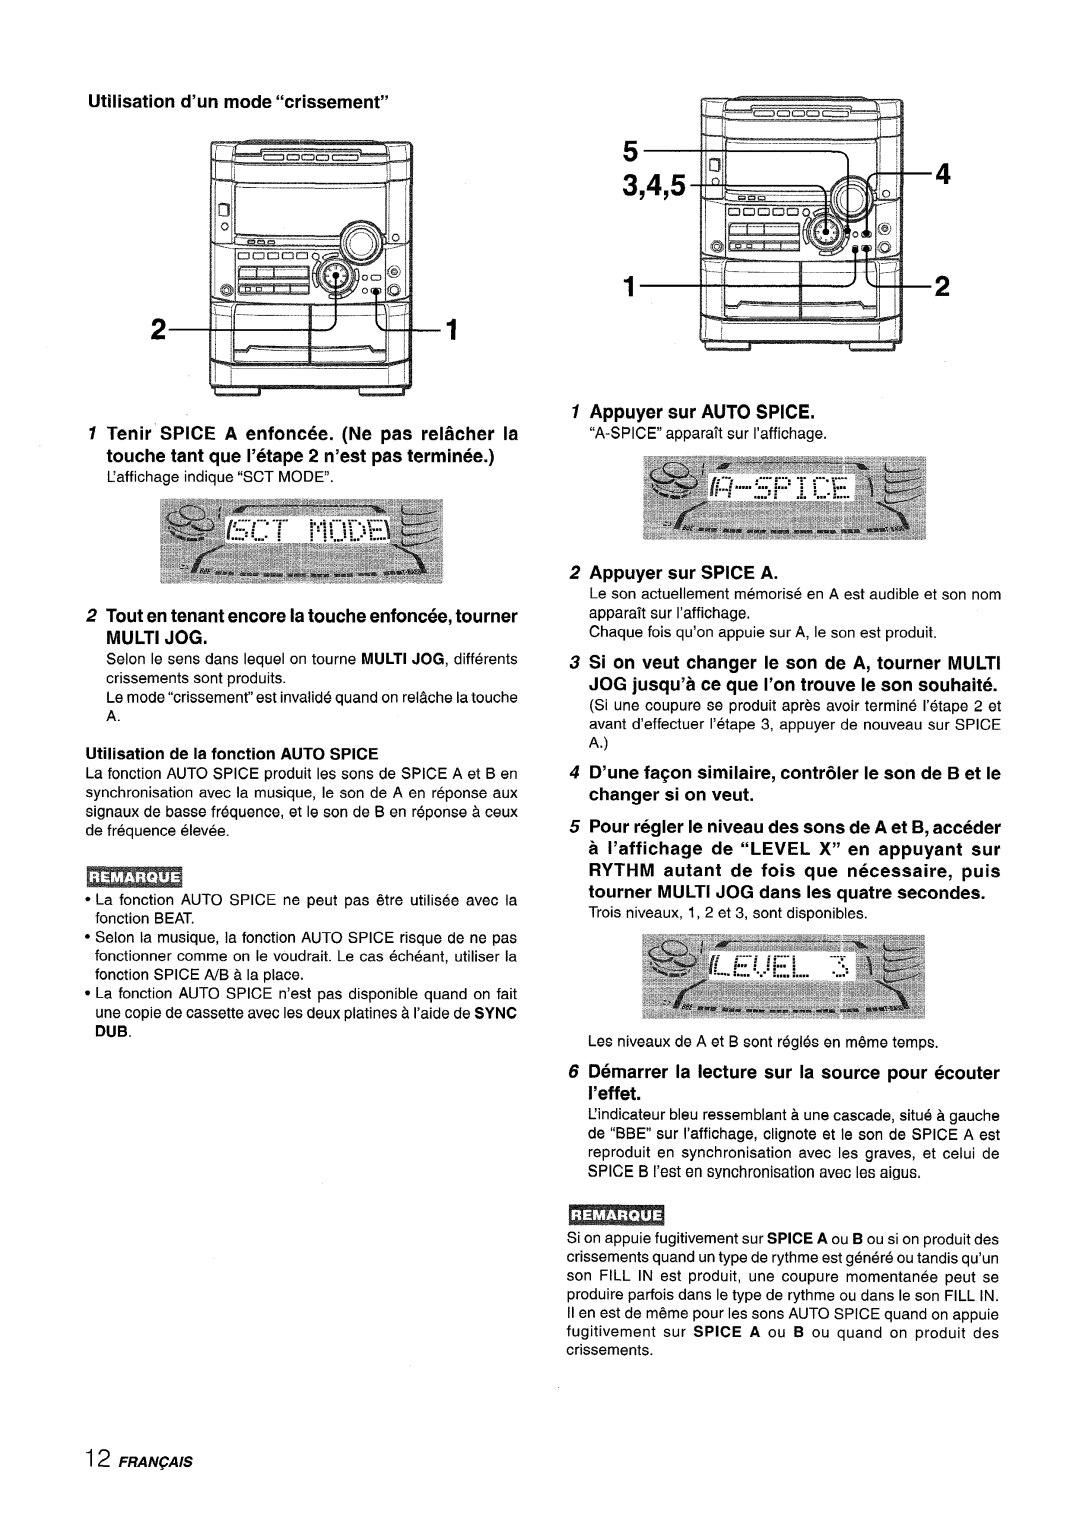 Sony NSX-A767 manual h-- ‘-“””--H, 3,4,5, Utilisation d’un mode “crissement”, Appuyer sur AUTO SPICE, Appuyer sur SPICE A 